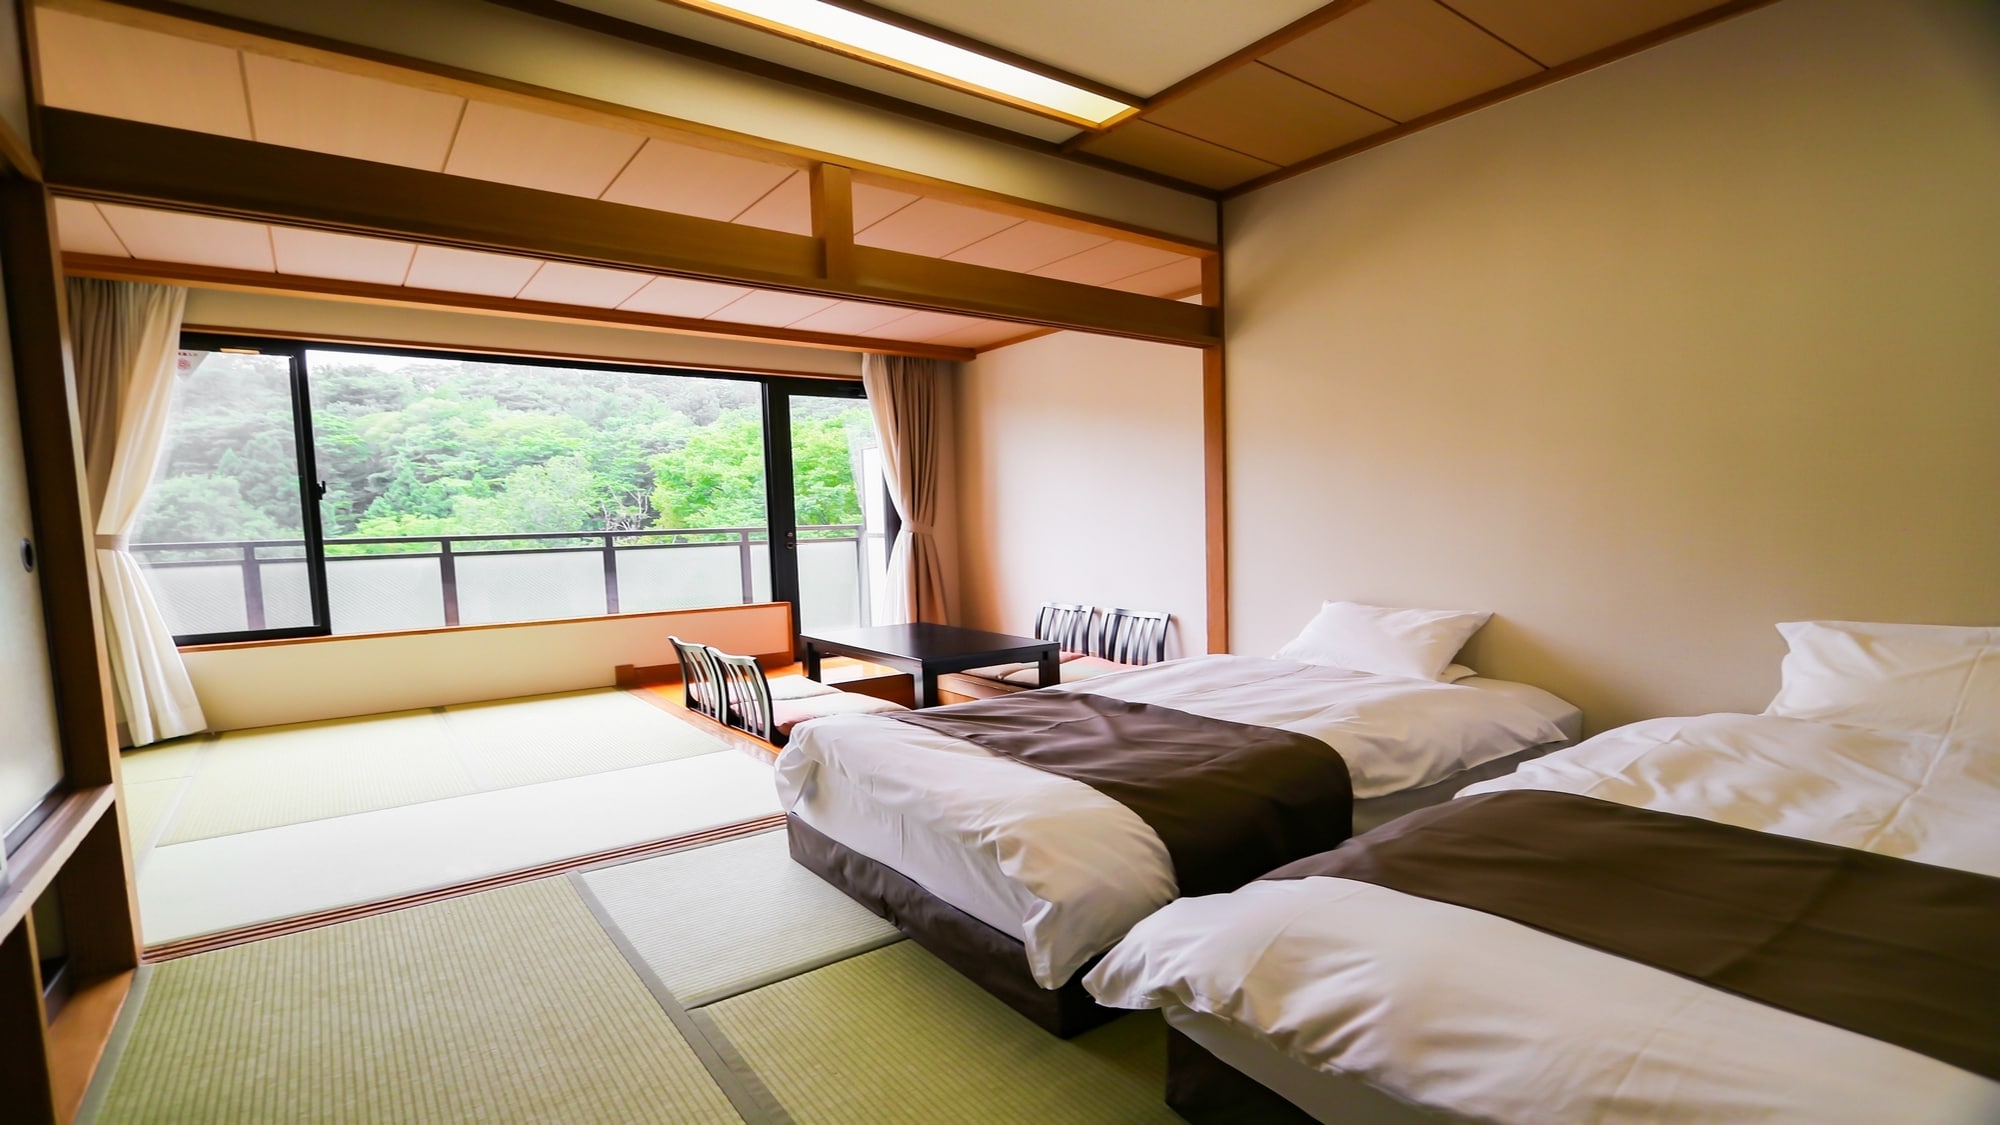 [ปลอดบุหรี่] ห้องพักแบบญี่ปุ่นและตะวันตก อาคารฝั่งตะวันตก เสื่อทาทามิ 10 ผืน + เสื่อทาทามิ 4.5 ผืนแฝด (มีอ่างอาบน้ำและห้องสุขา)